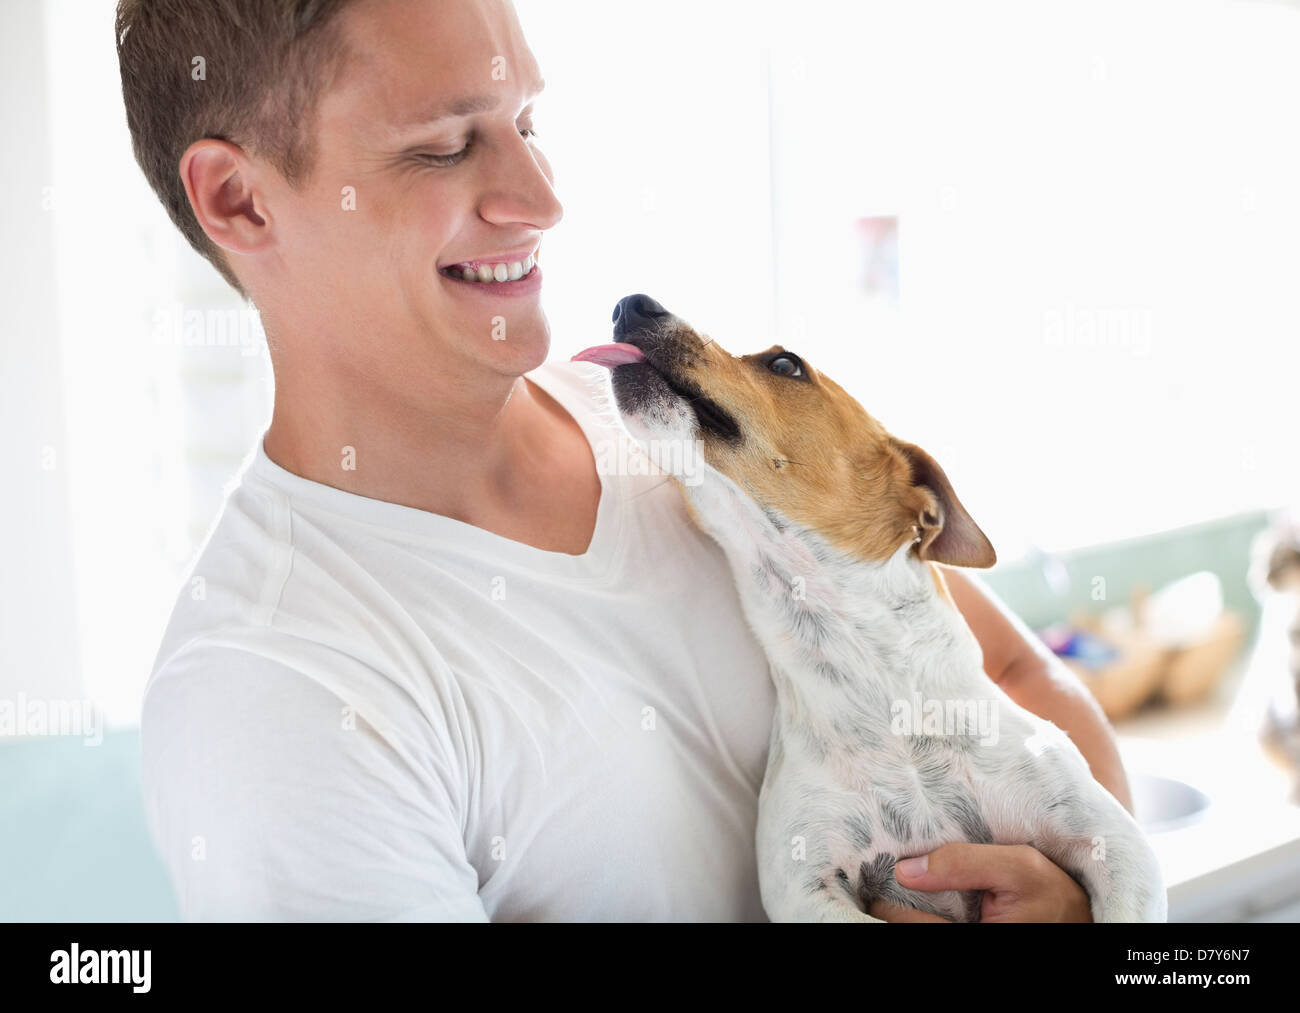 Smiling man holding dog Stock Photo